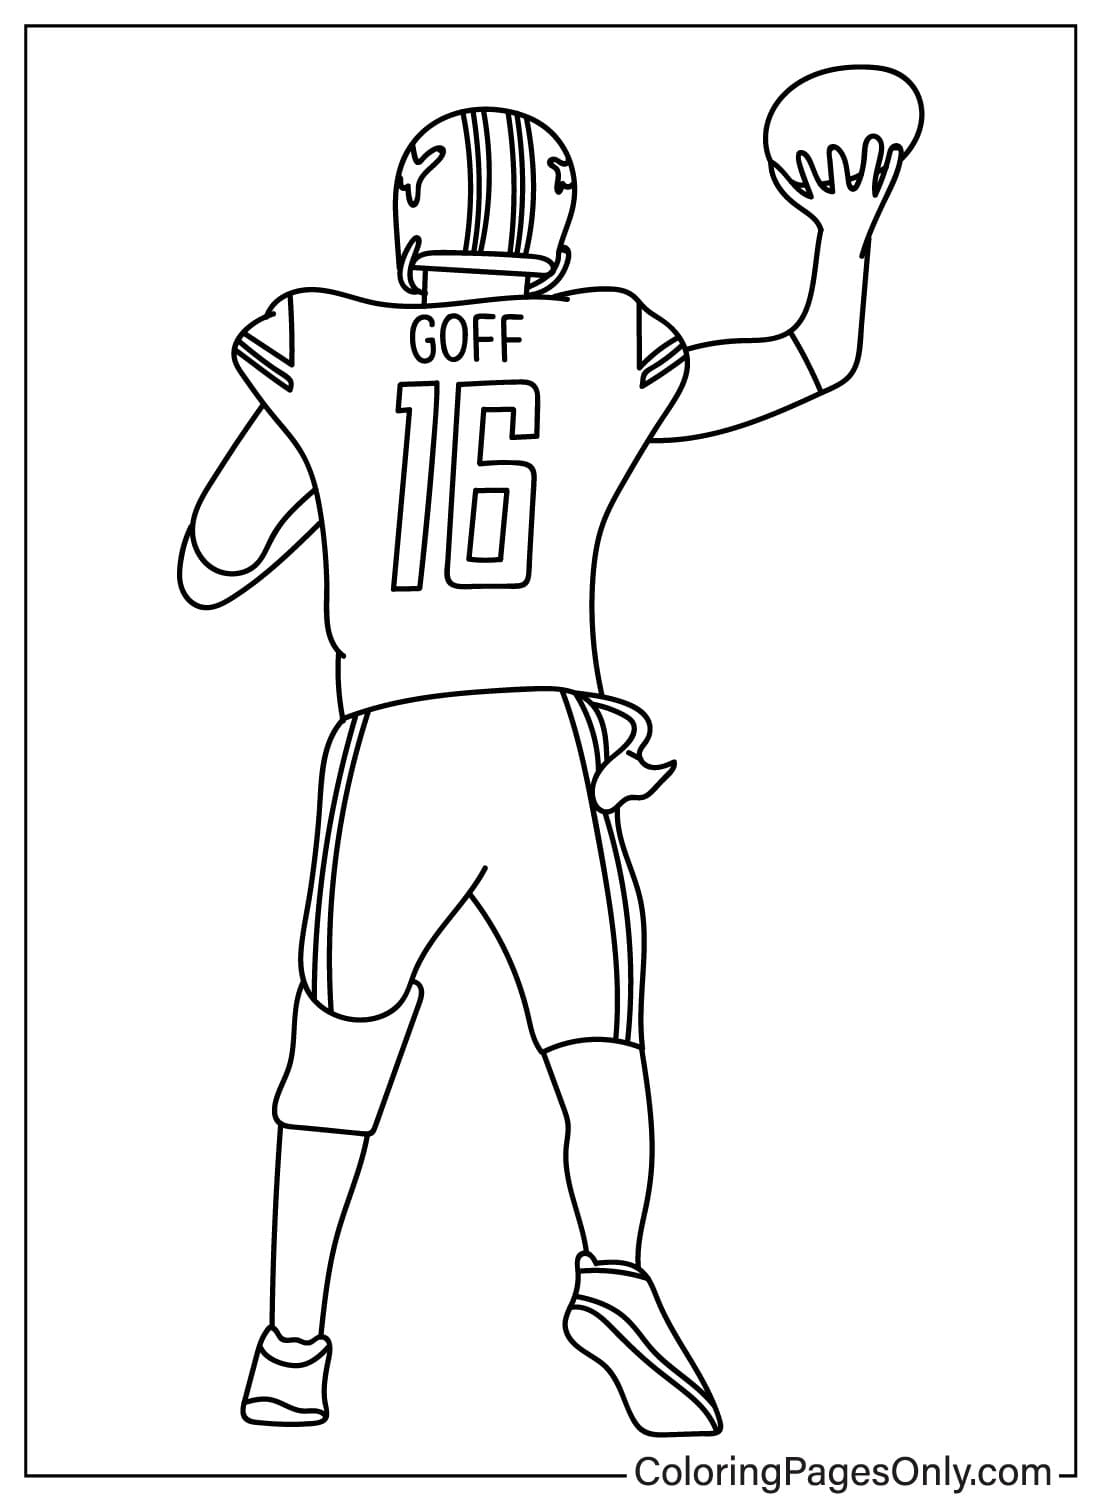 Página para colorear de Jared Goff de los Detroit Lions